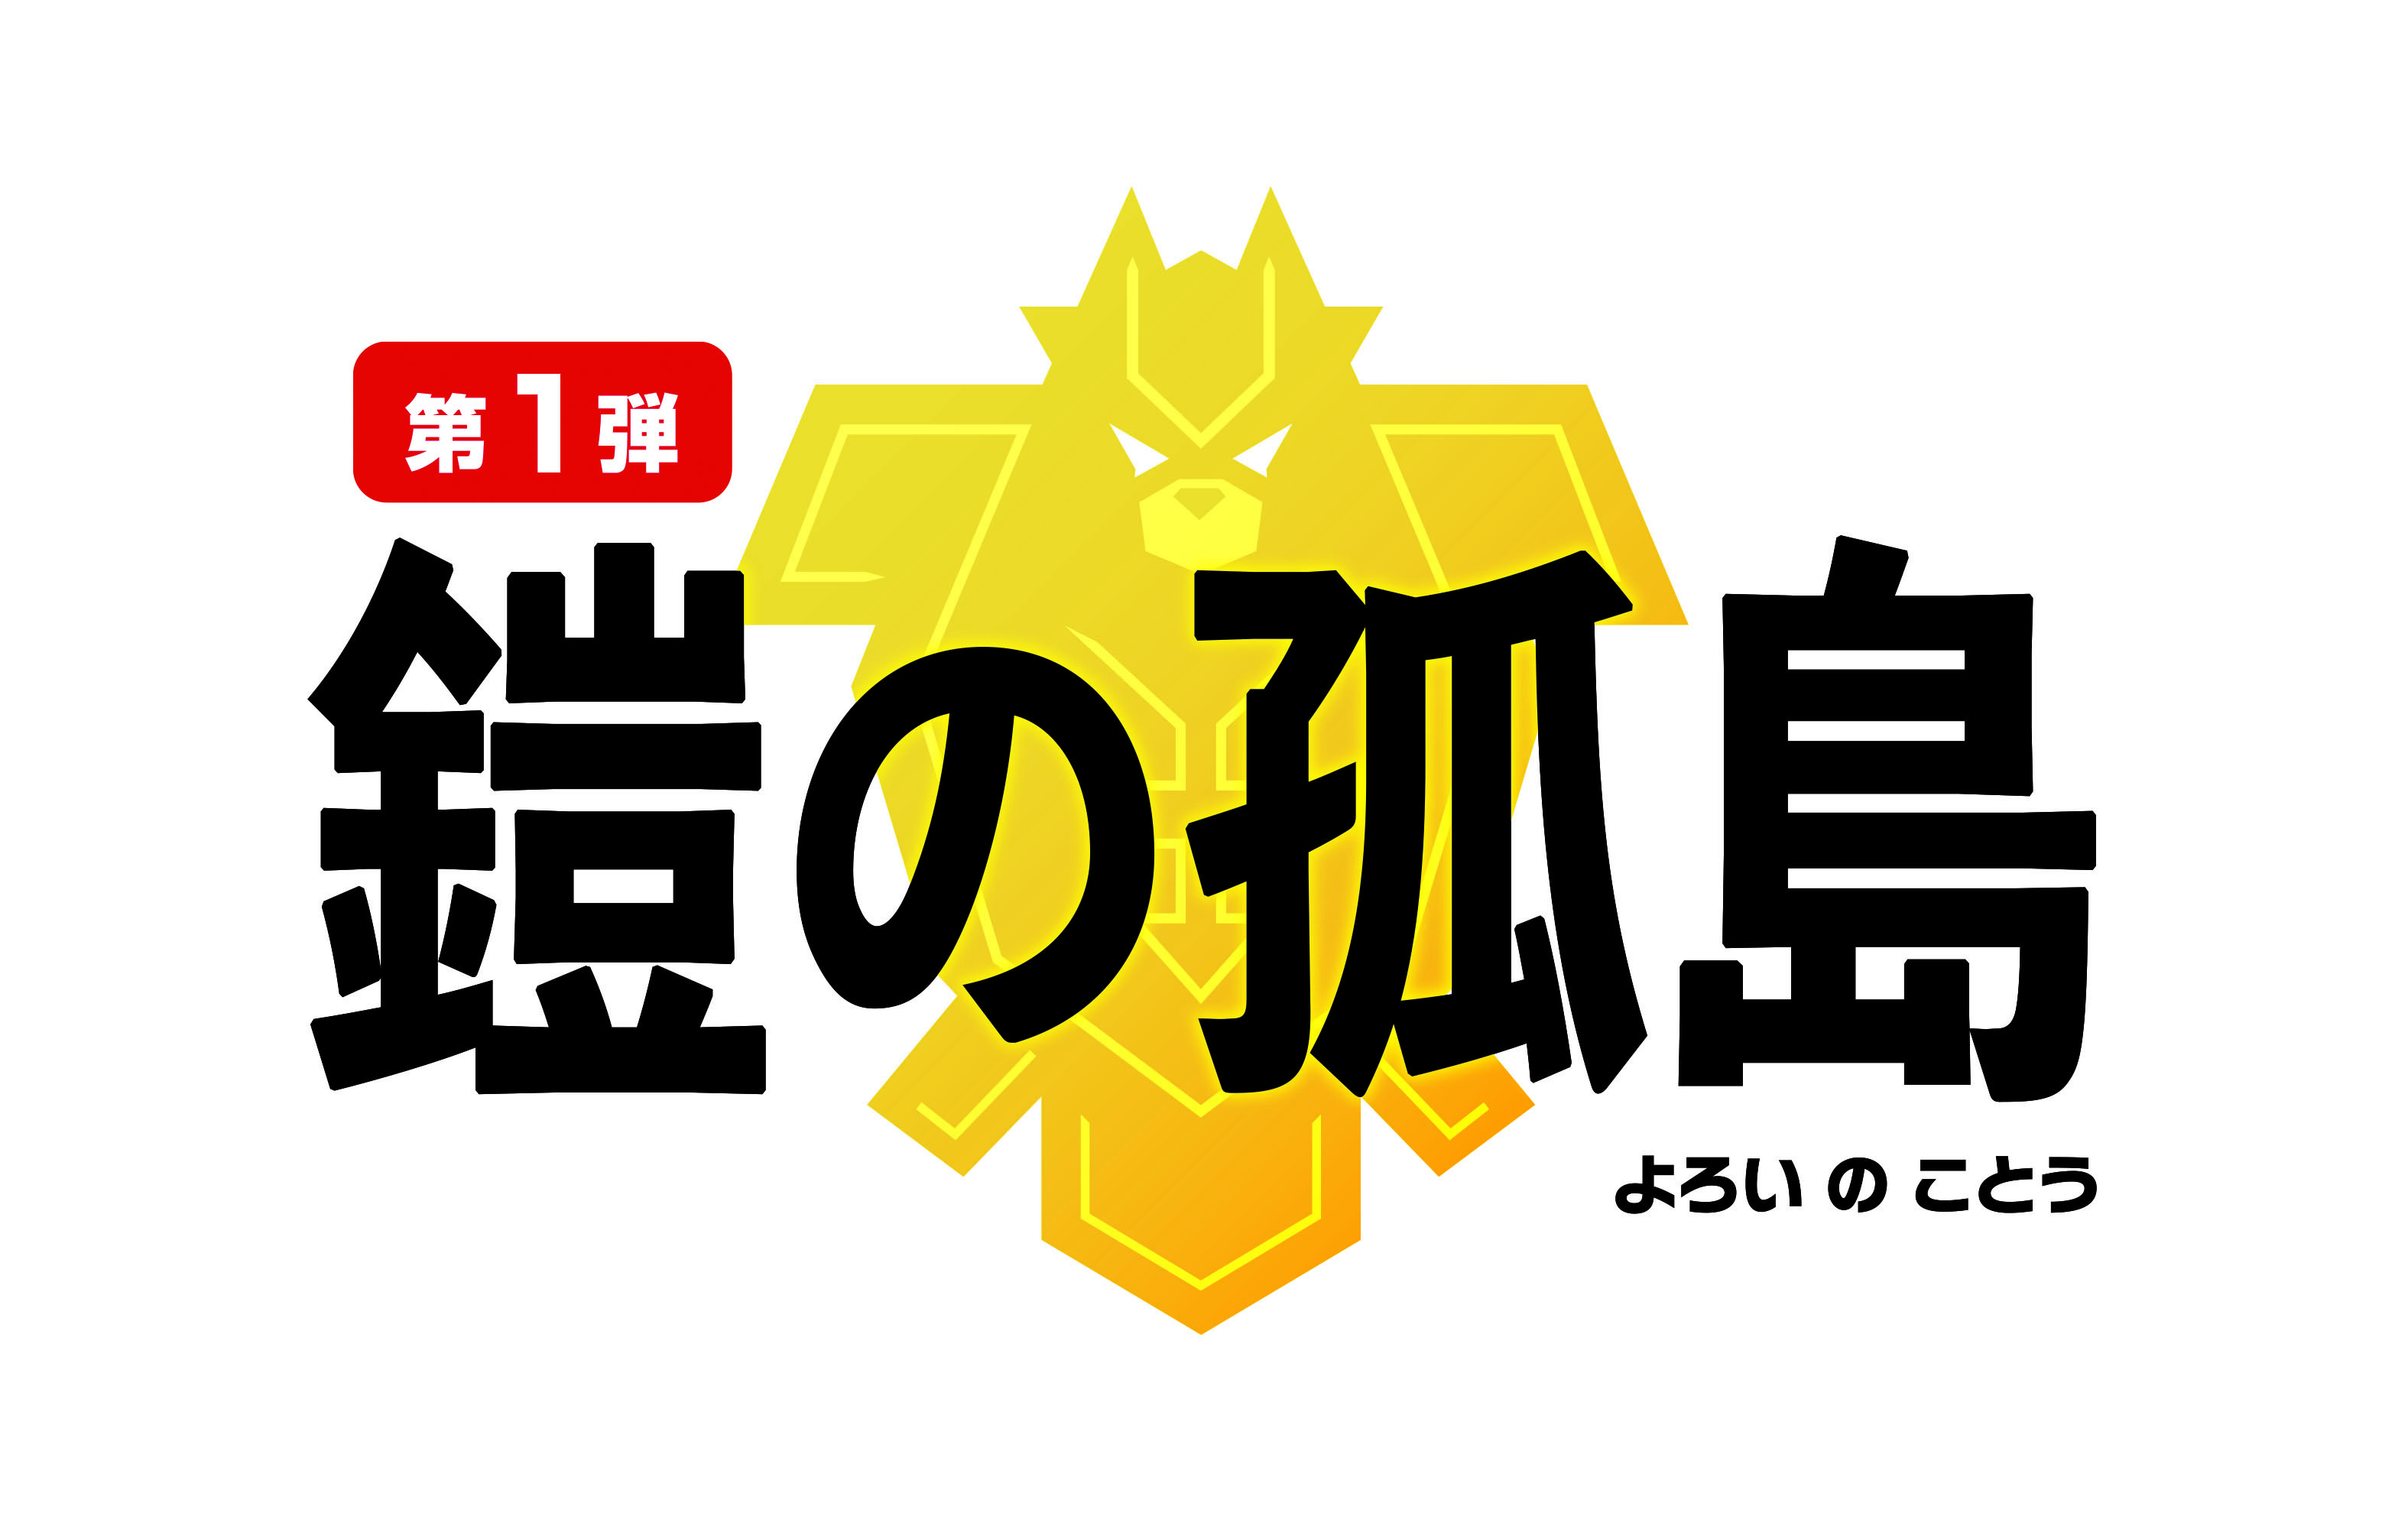 『ポケットモンスター ソード・シールド エキスパンションパス』第1弾「鎧の孤島」ロゴ